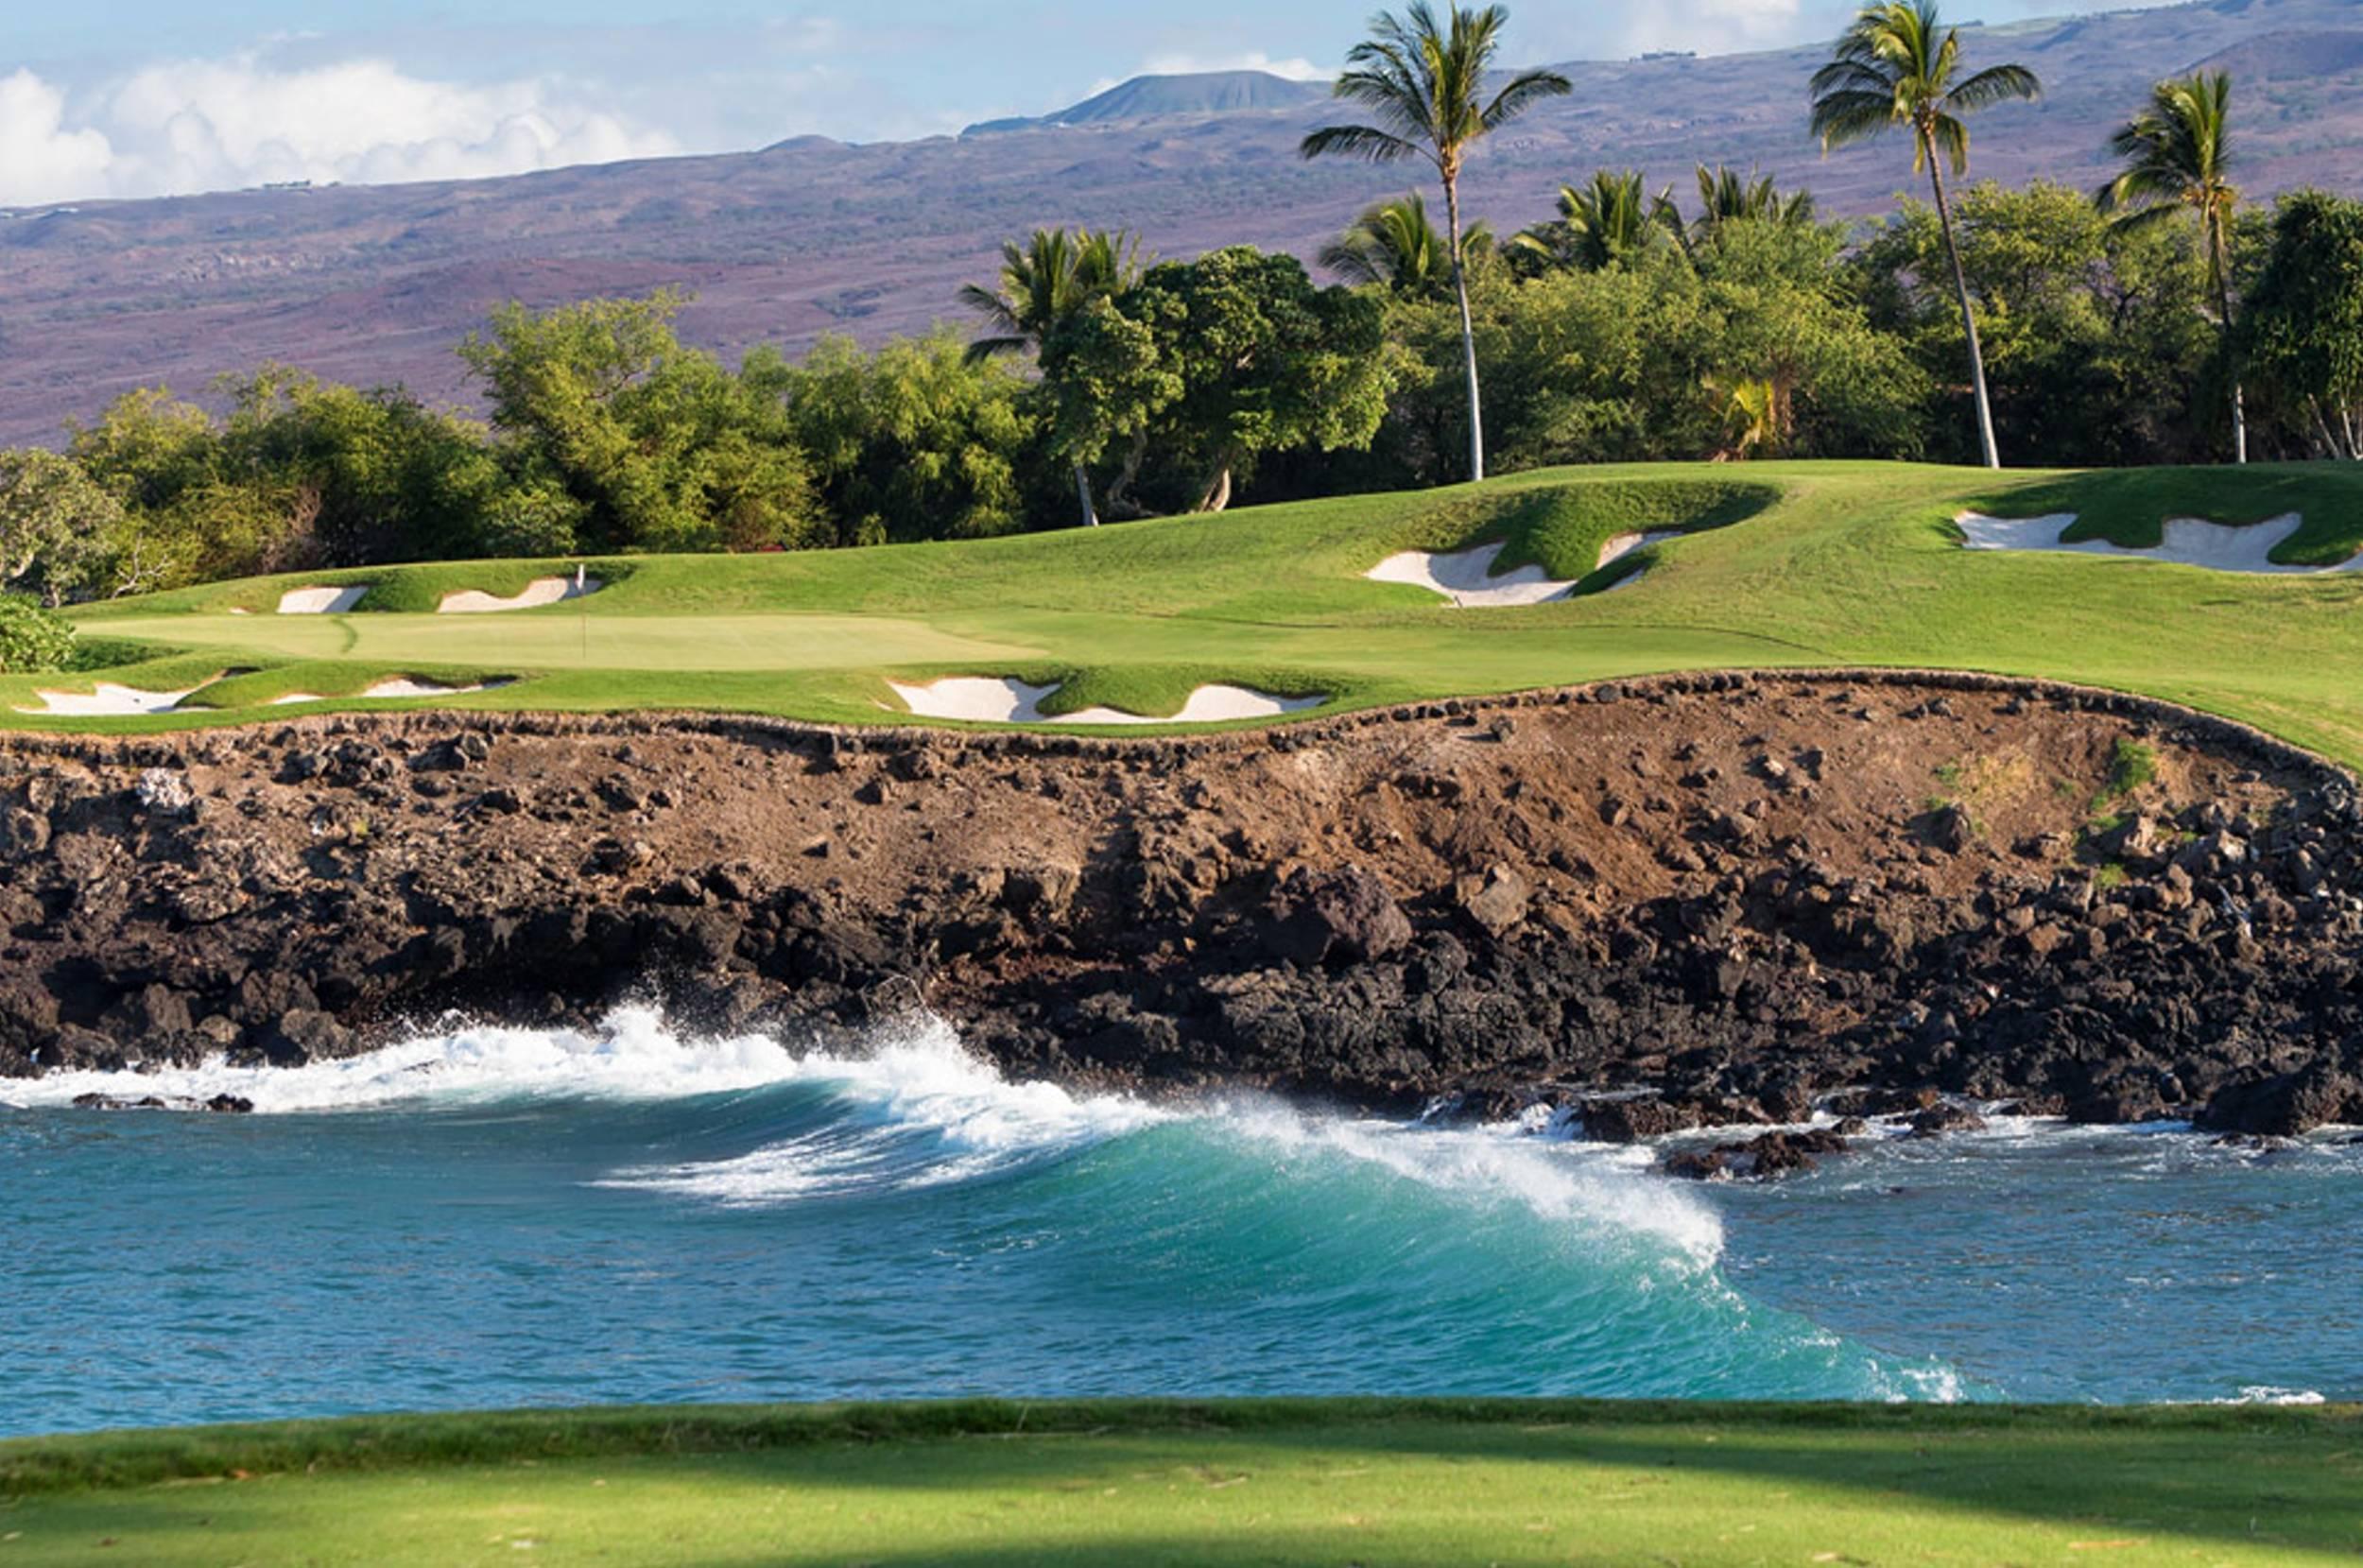 Hawaii Beach Golf Course HD Desktop Wallpaper Widescreen High